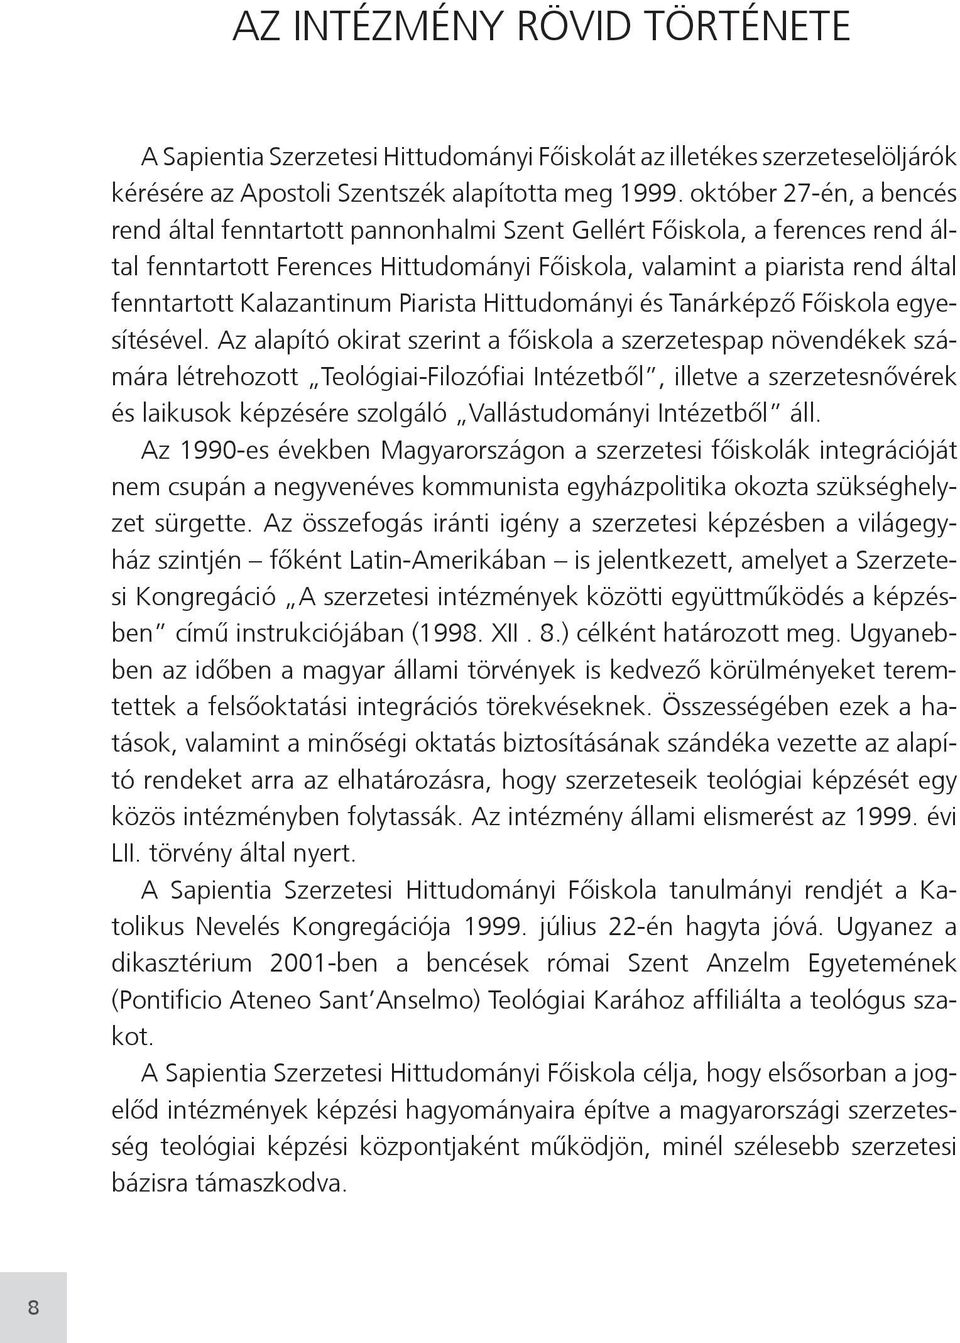 Kalazantinum Piarista Hittudományi és Tanárképző Főiskola egyesítésével.